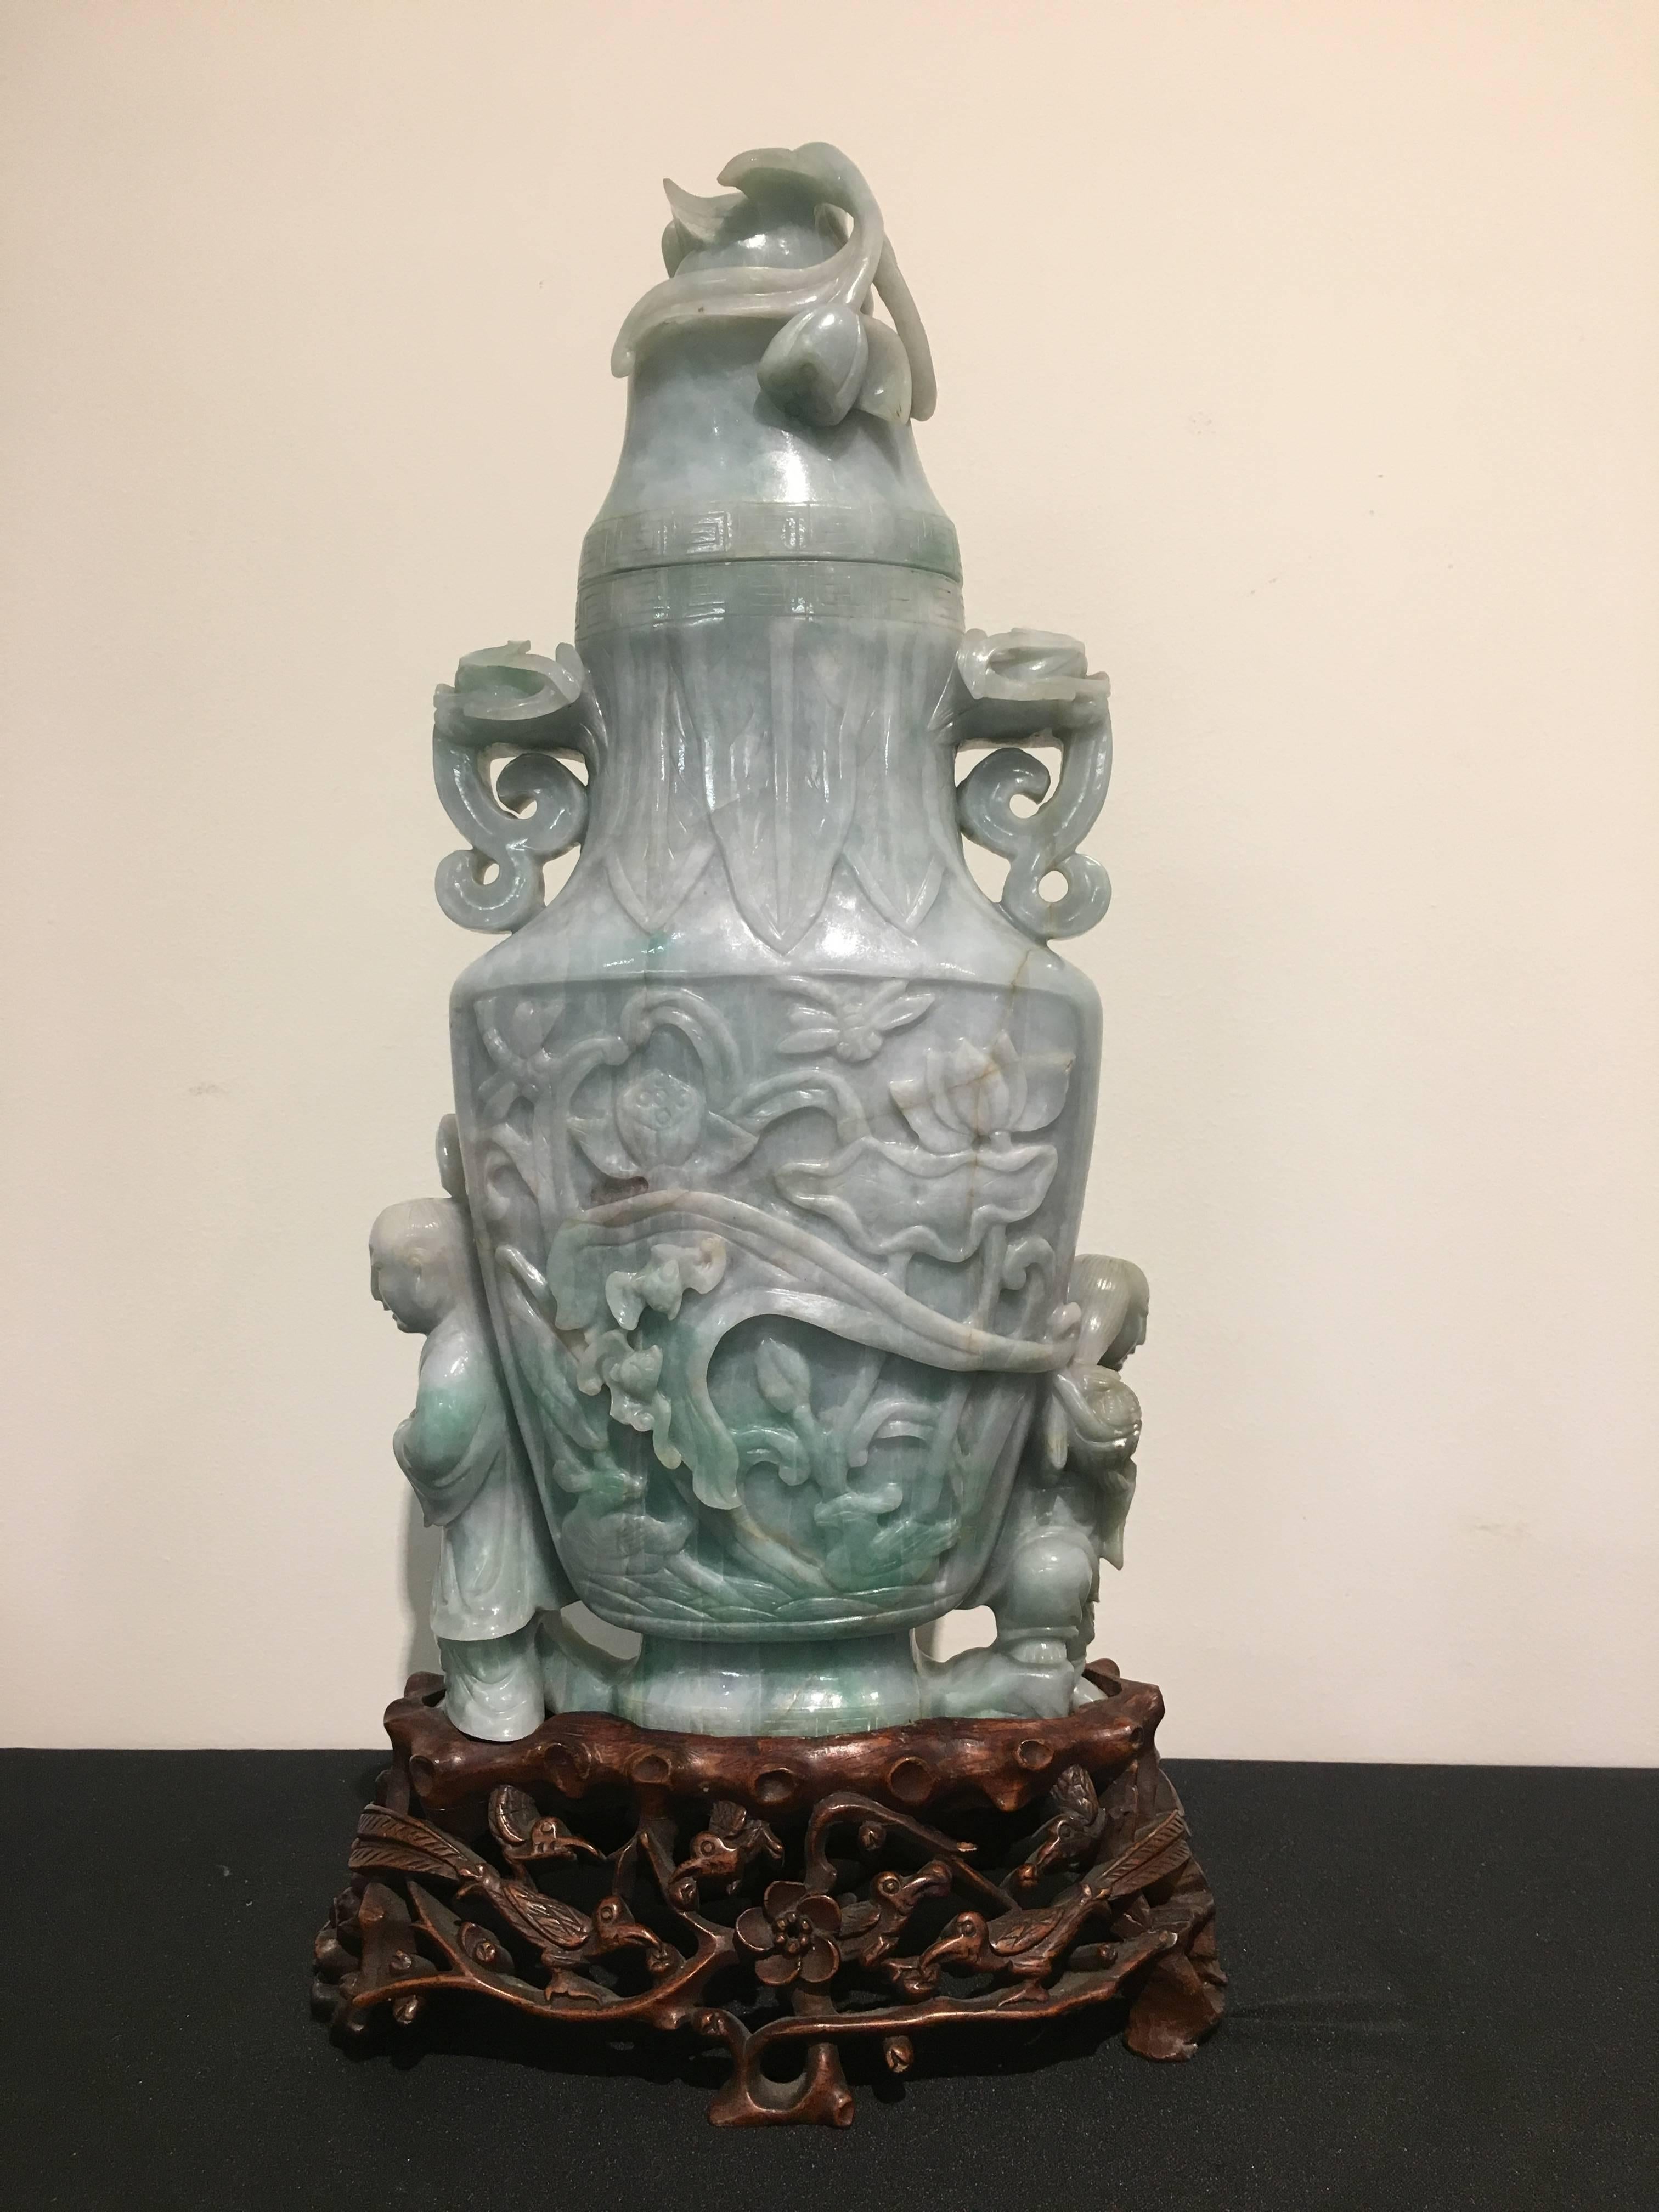 Un grand et impressionnant vase chinois en jade caverneux, période de la République, vers 1930. 

Sculptée dans un morceau de jade massif. Le vase est sculpté des He He Er Xian, les jumeaux immortels du panthéon taoïste, qui soutiennent les côtés.